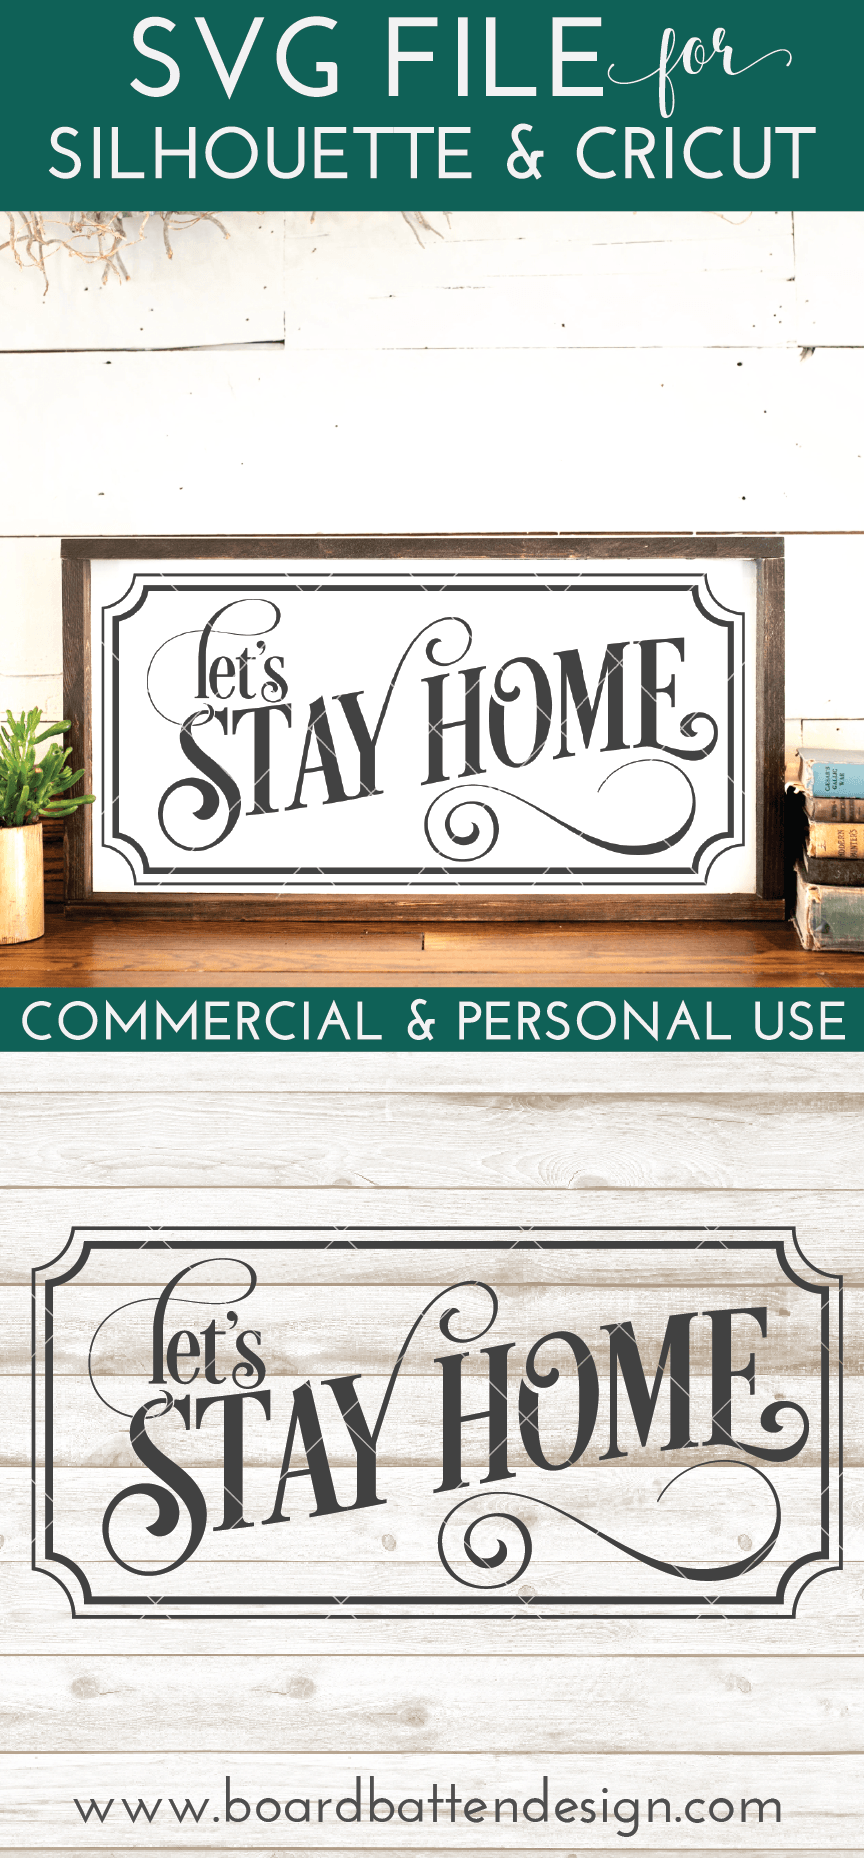 Download Let's Stay Home SVG File - Board & Batten Design Co.